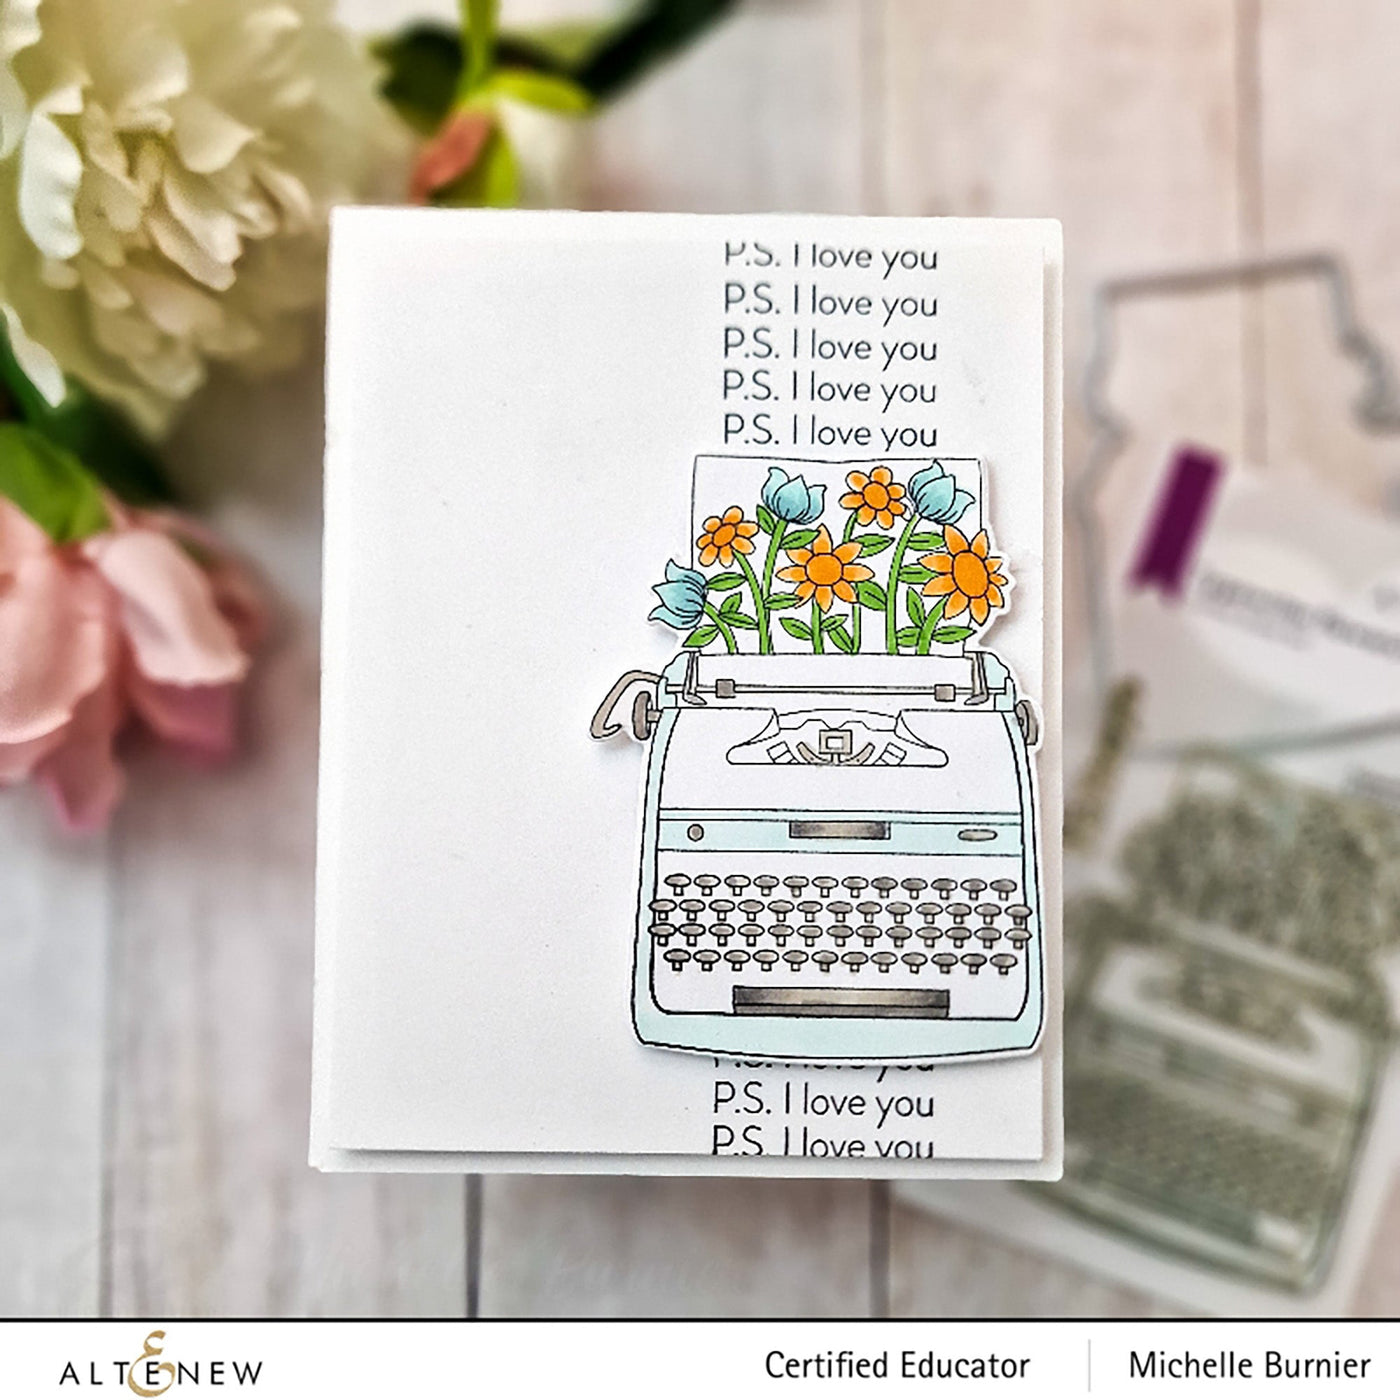 Stamp & Die Bundle Typewriter Flowers